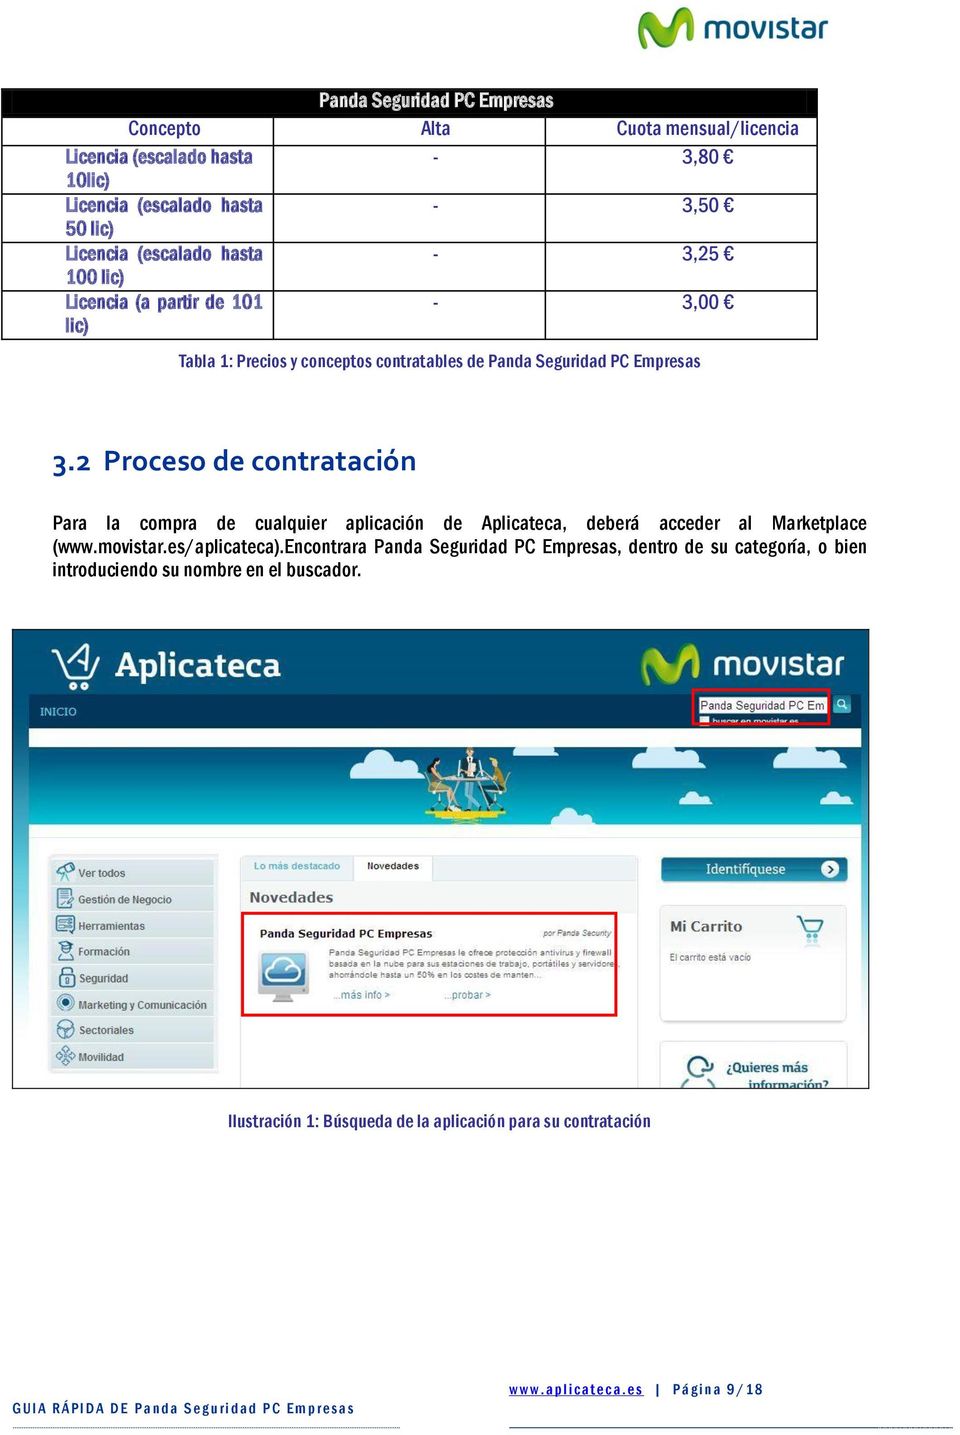 2 Prces de cntratación Para la cmpra de cualquier aplicación de Aplicateca, deberá acceder al Marketplace (www.mvistar.es/aplicateca).